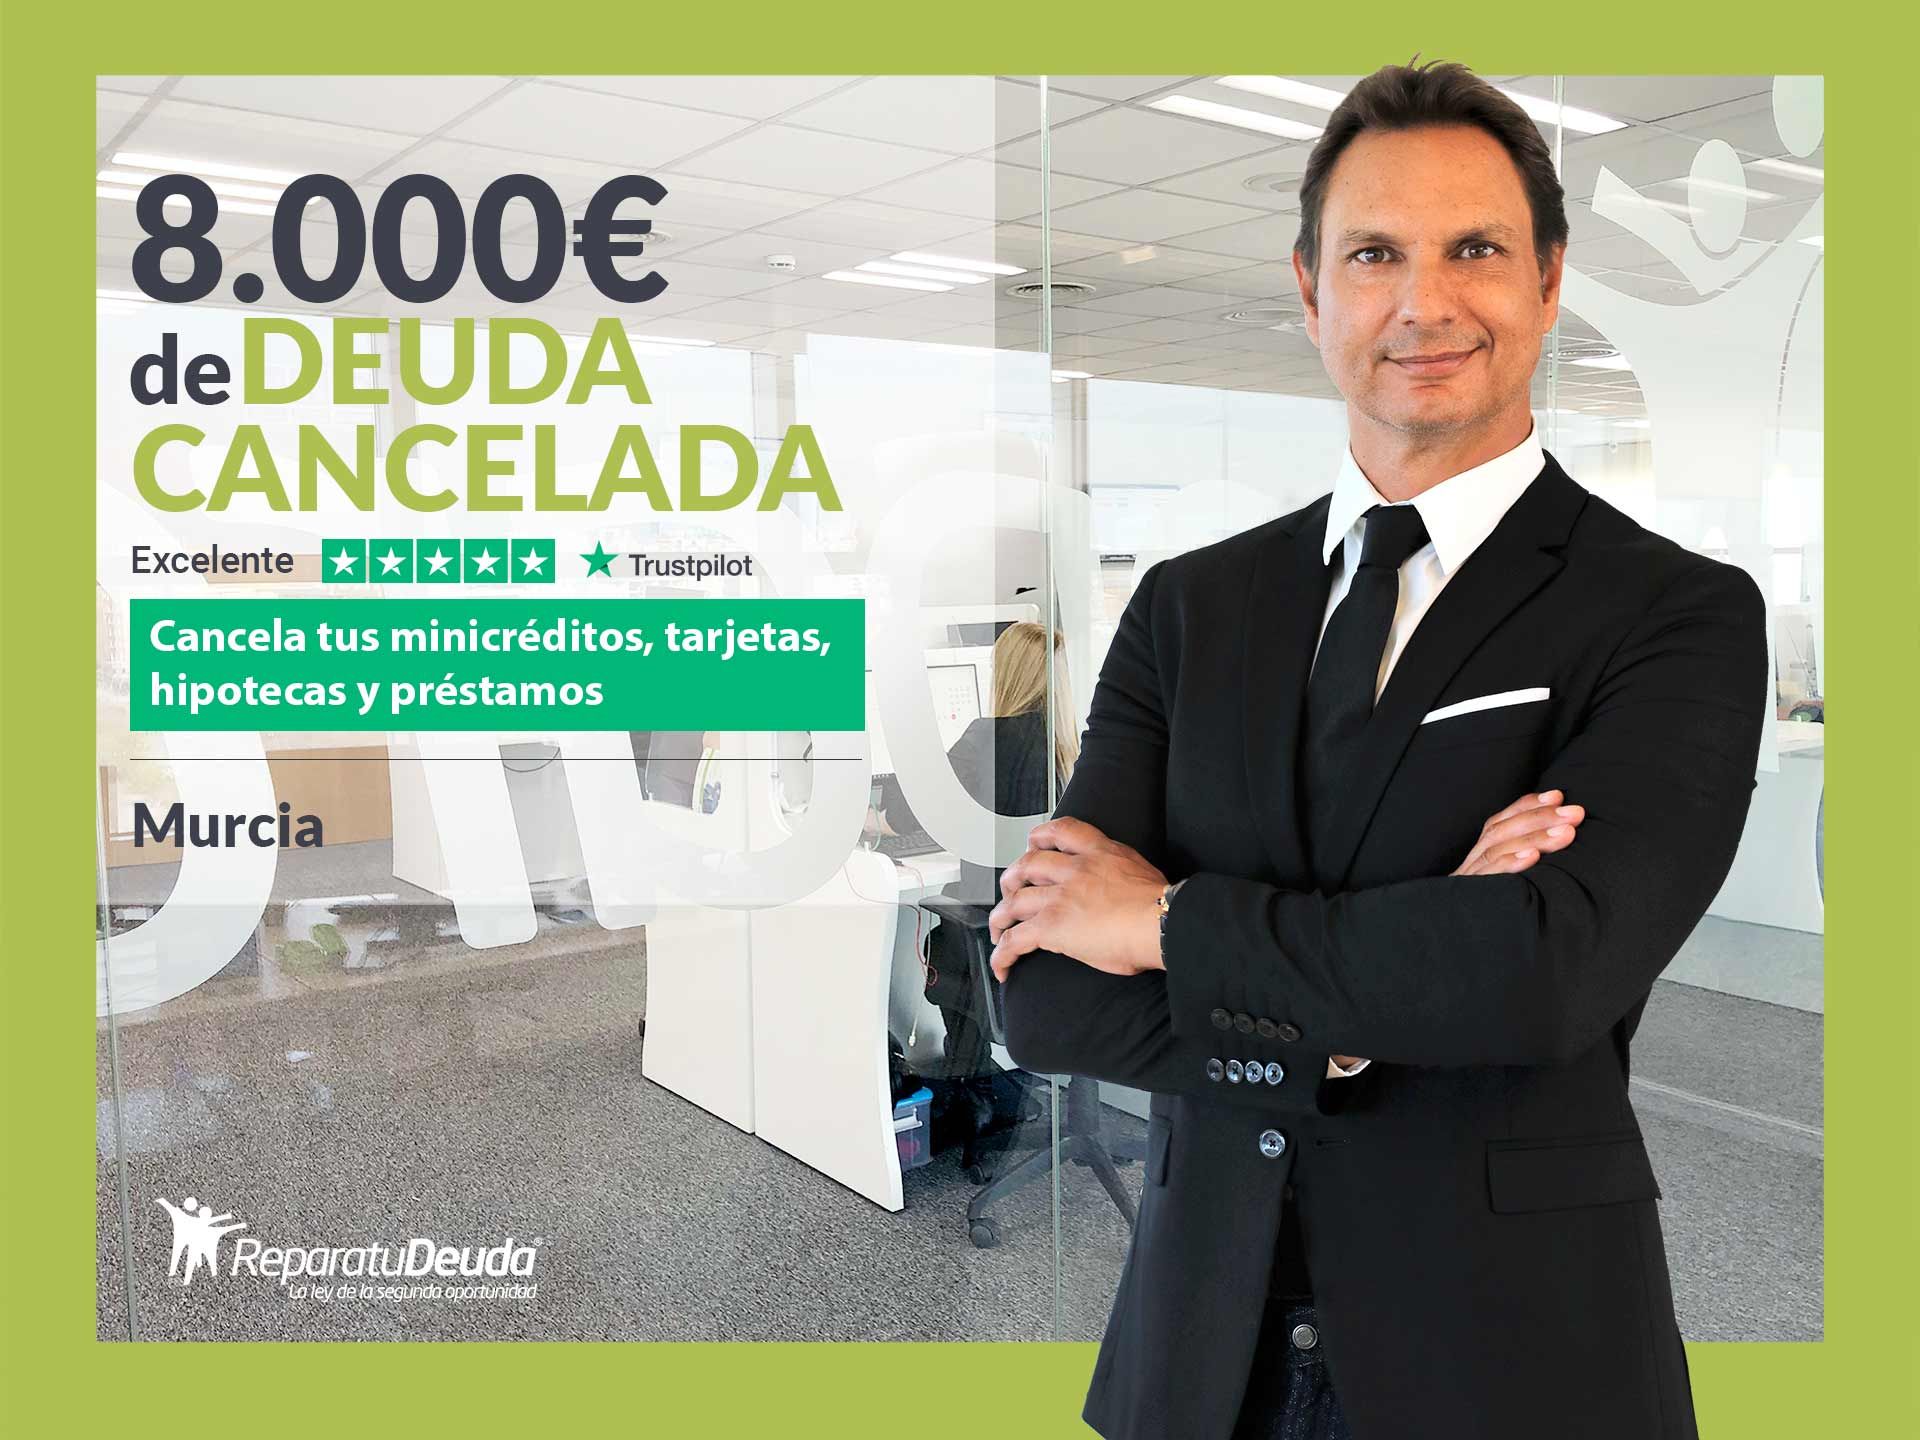 Repara tu Deuda Abogados cancela 8.000? en Murcia con la Ley de Segunda Oportunidad